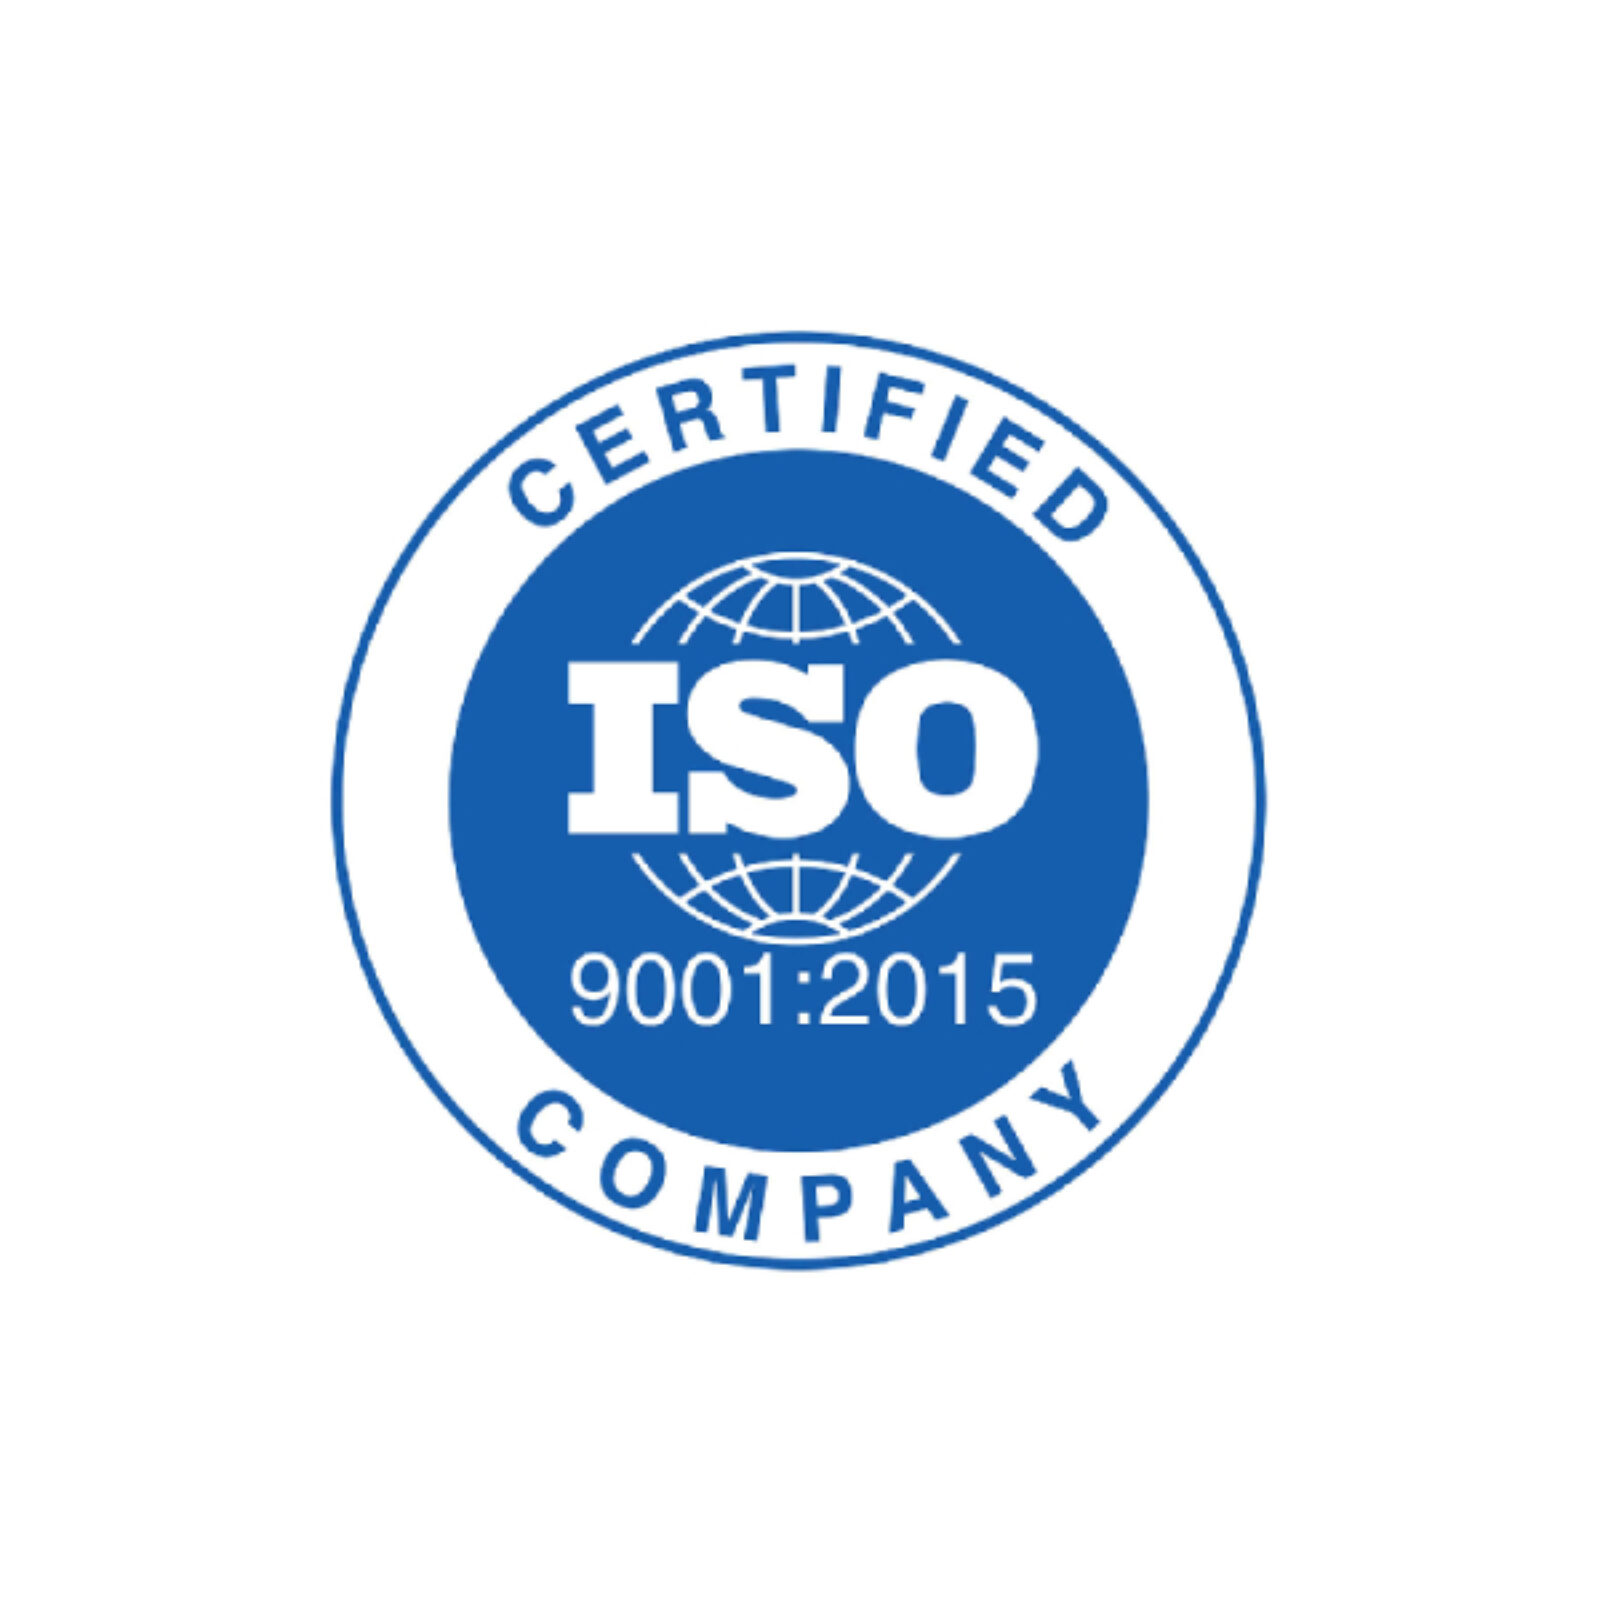 eSST AG ist nach ISO 9001:2015 zertifiziert. Was sind die Vorteile für unsere Kunden?